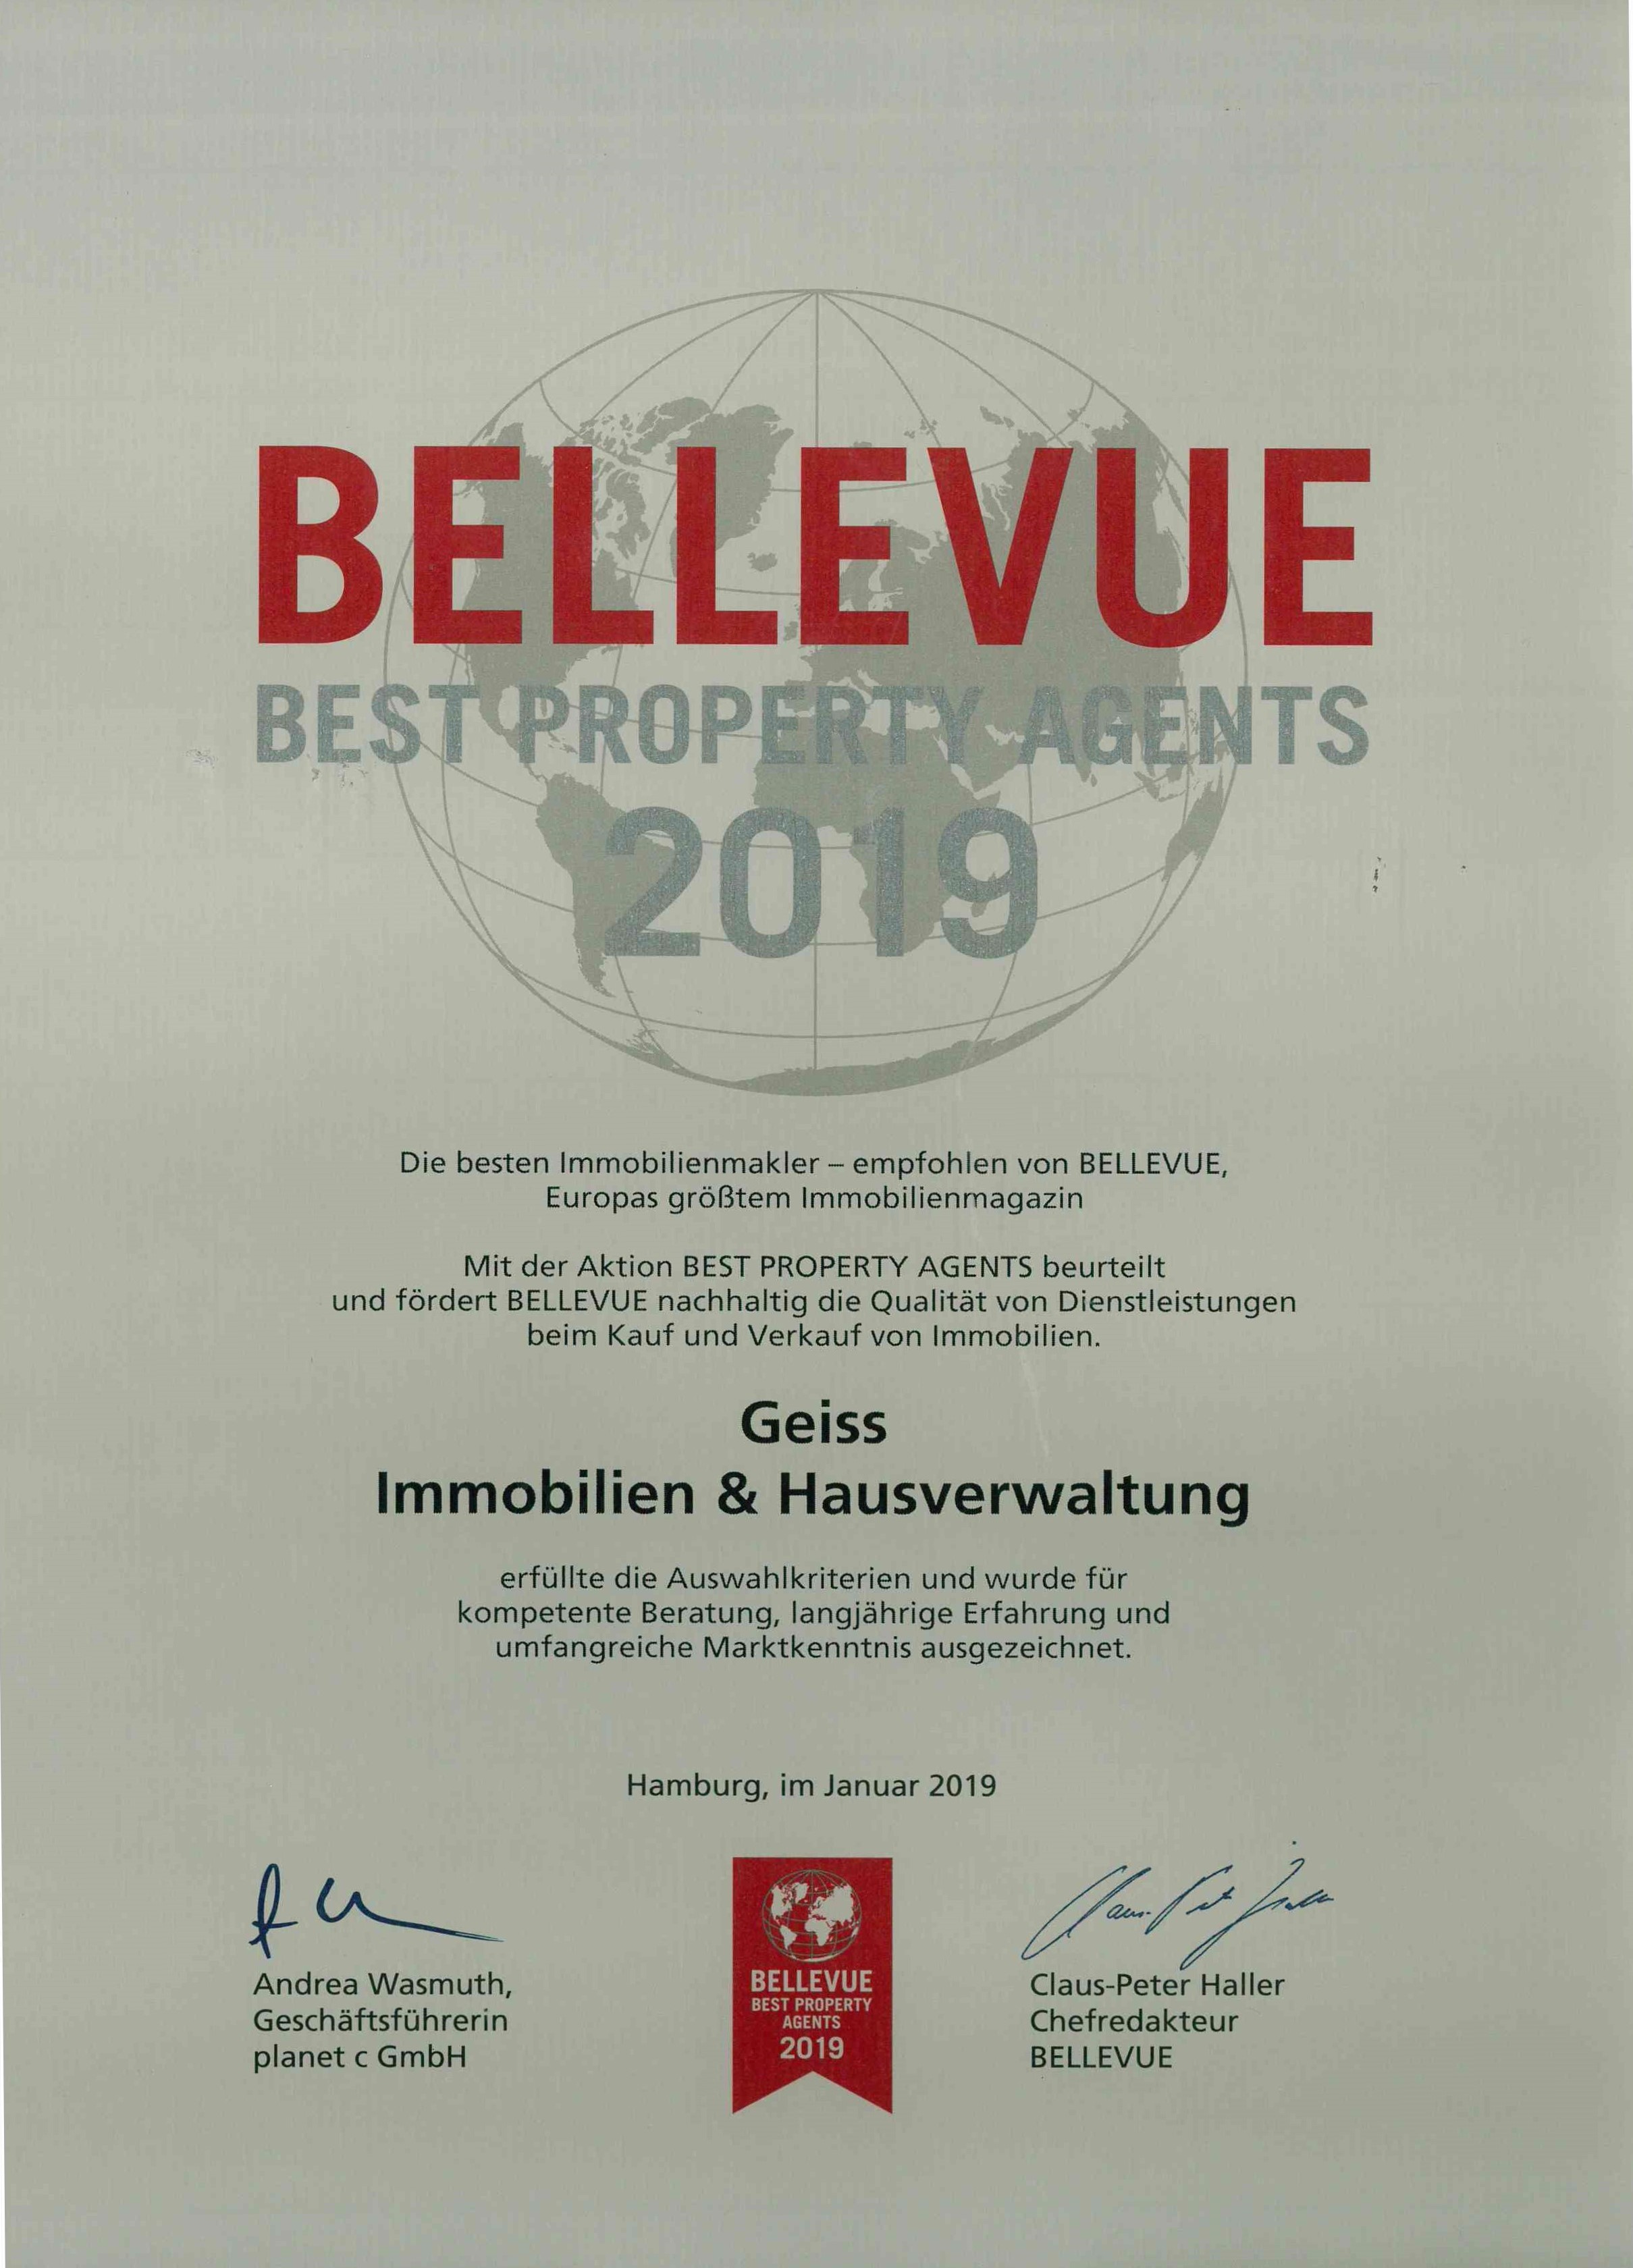 Bellevue Best Property Agents 2019